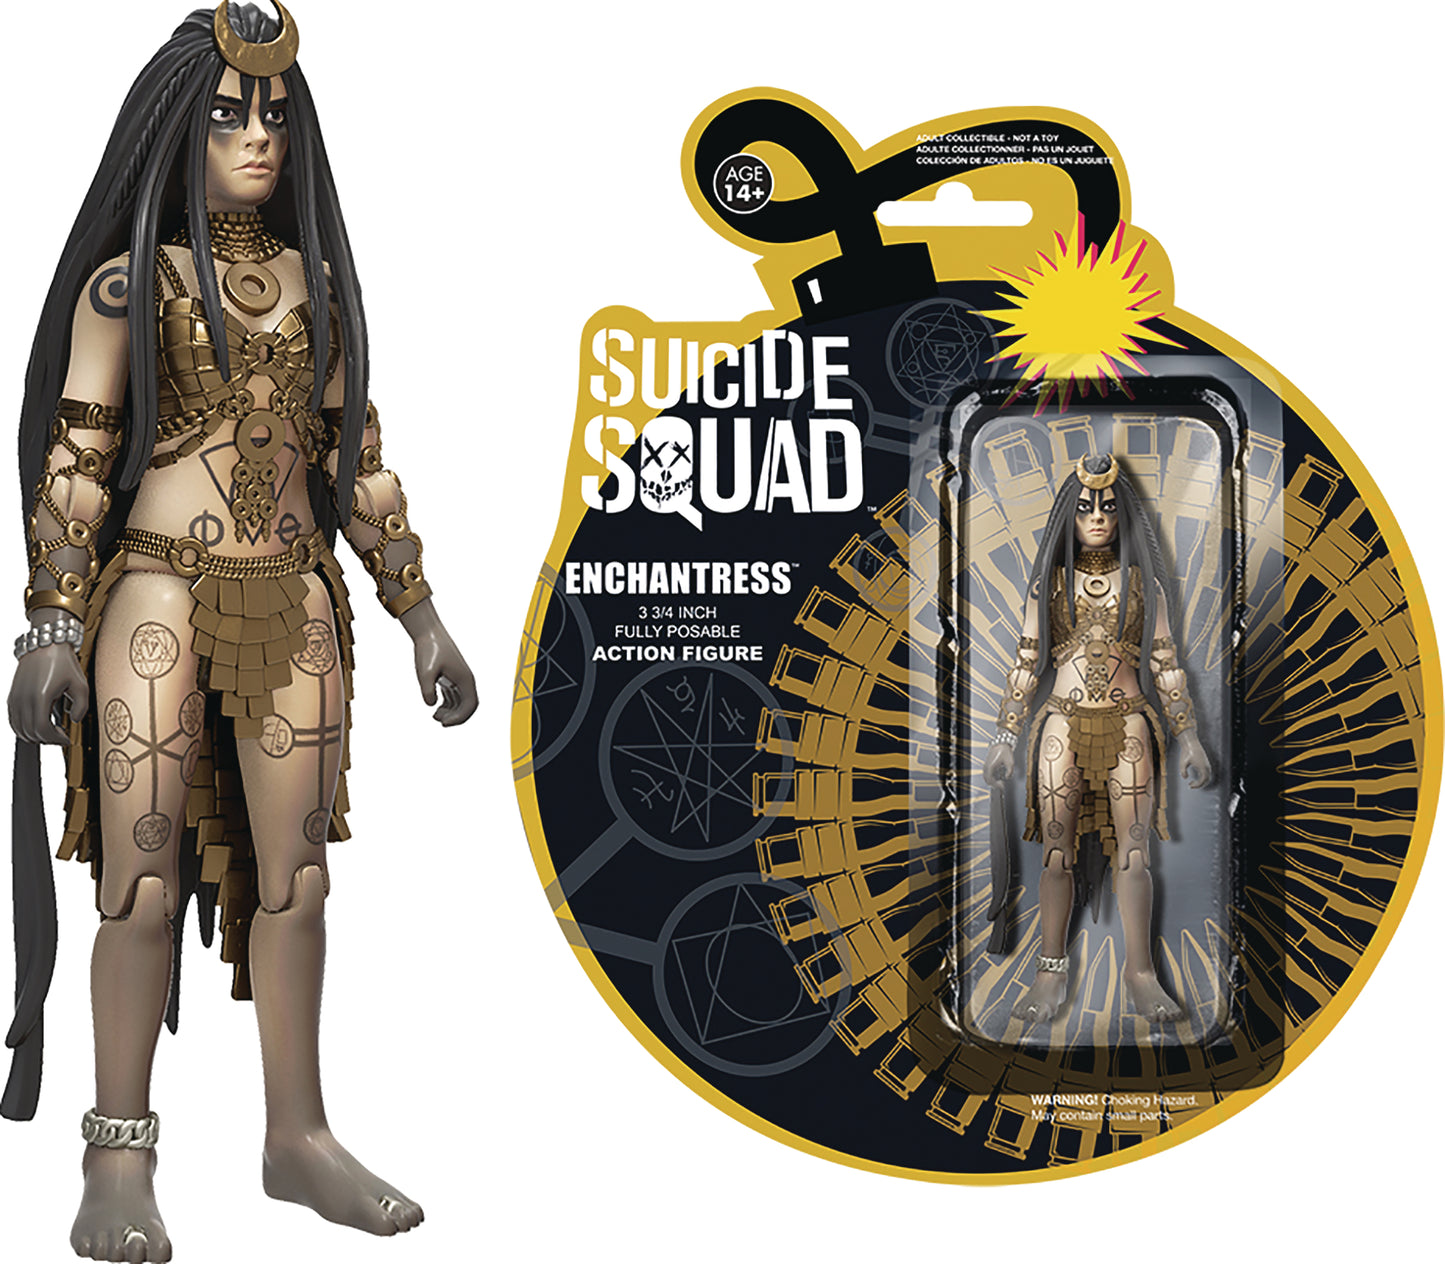 Suicide Squad Enchantress 3.25" Action Figure